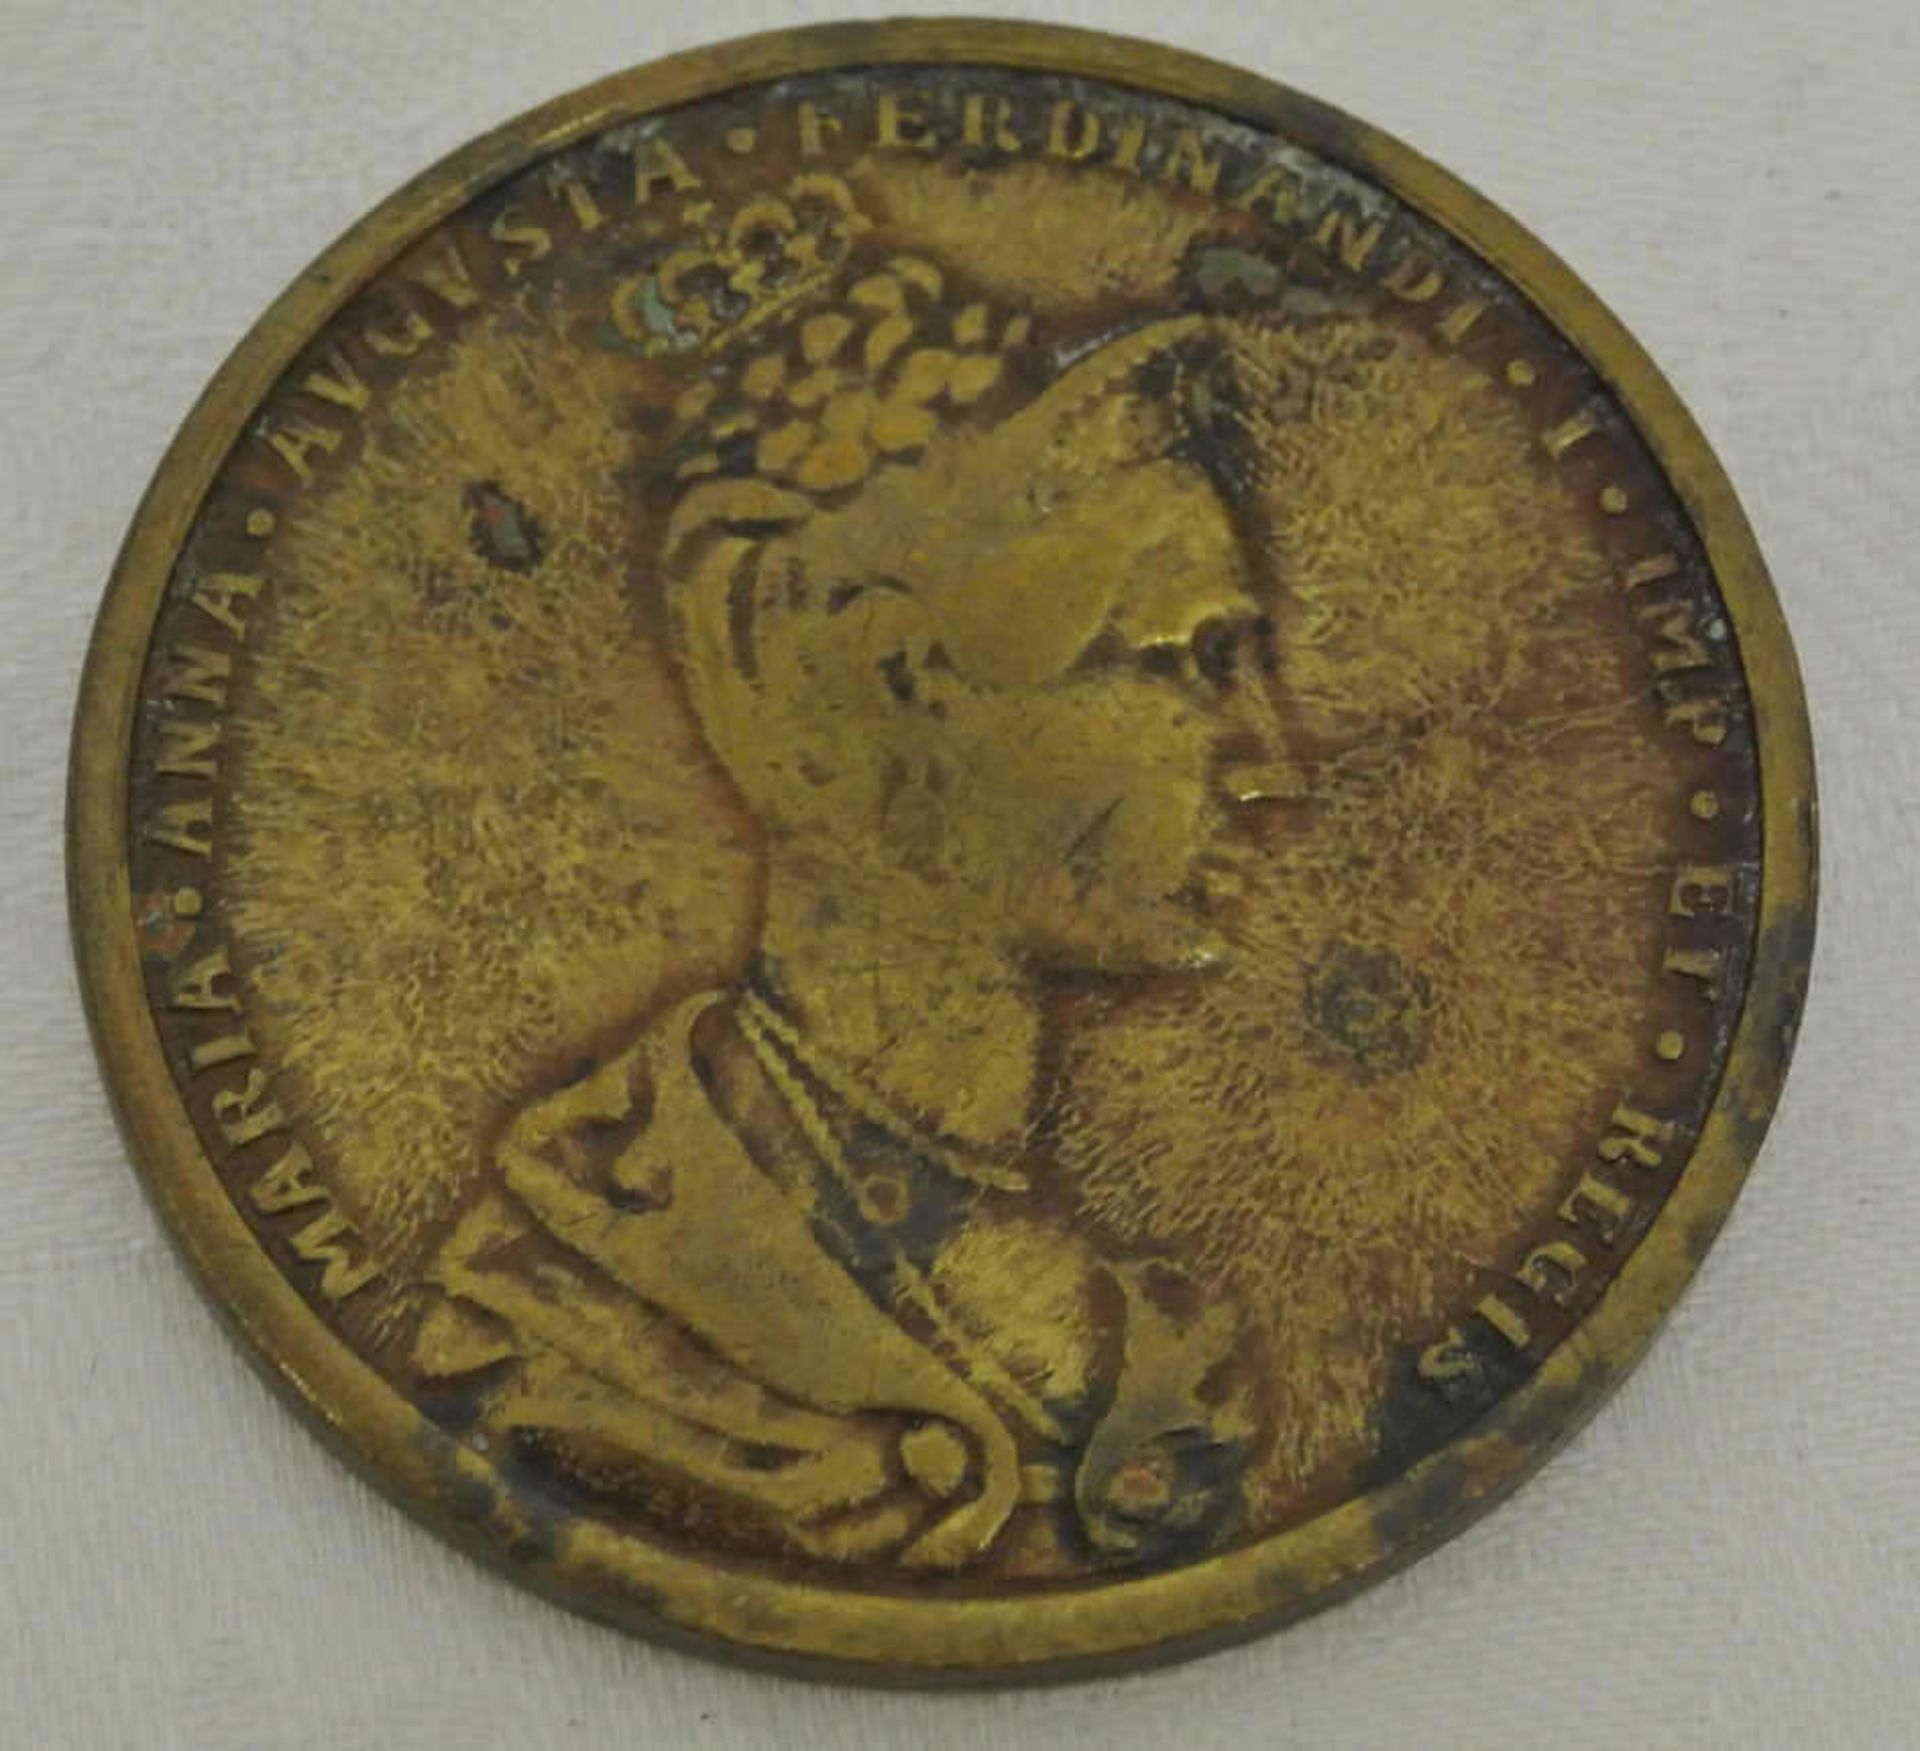 Medaille 1836, Bronze, Ferdinand I (1835-1848) auf die böhmische Krönung, Brustbild der Kaiserin